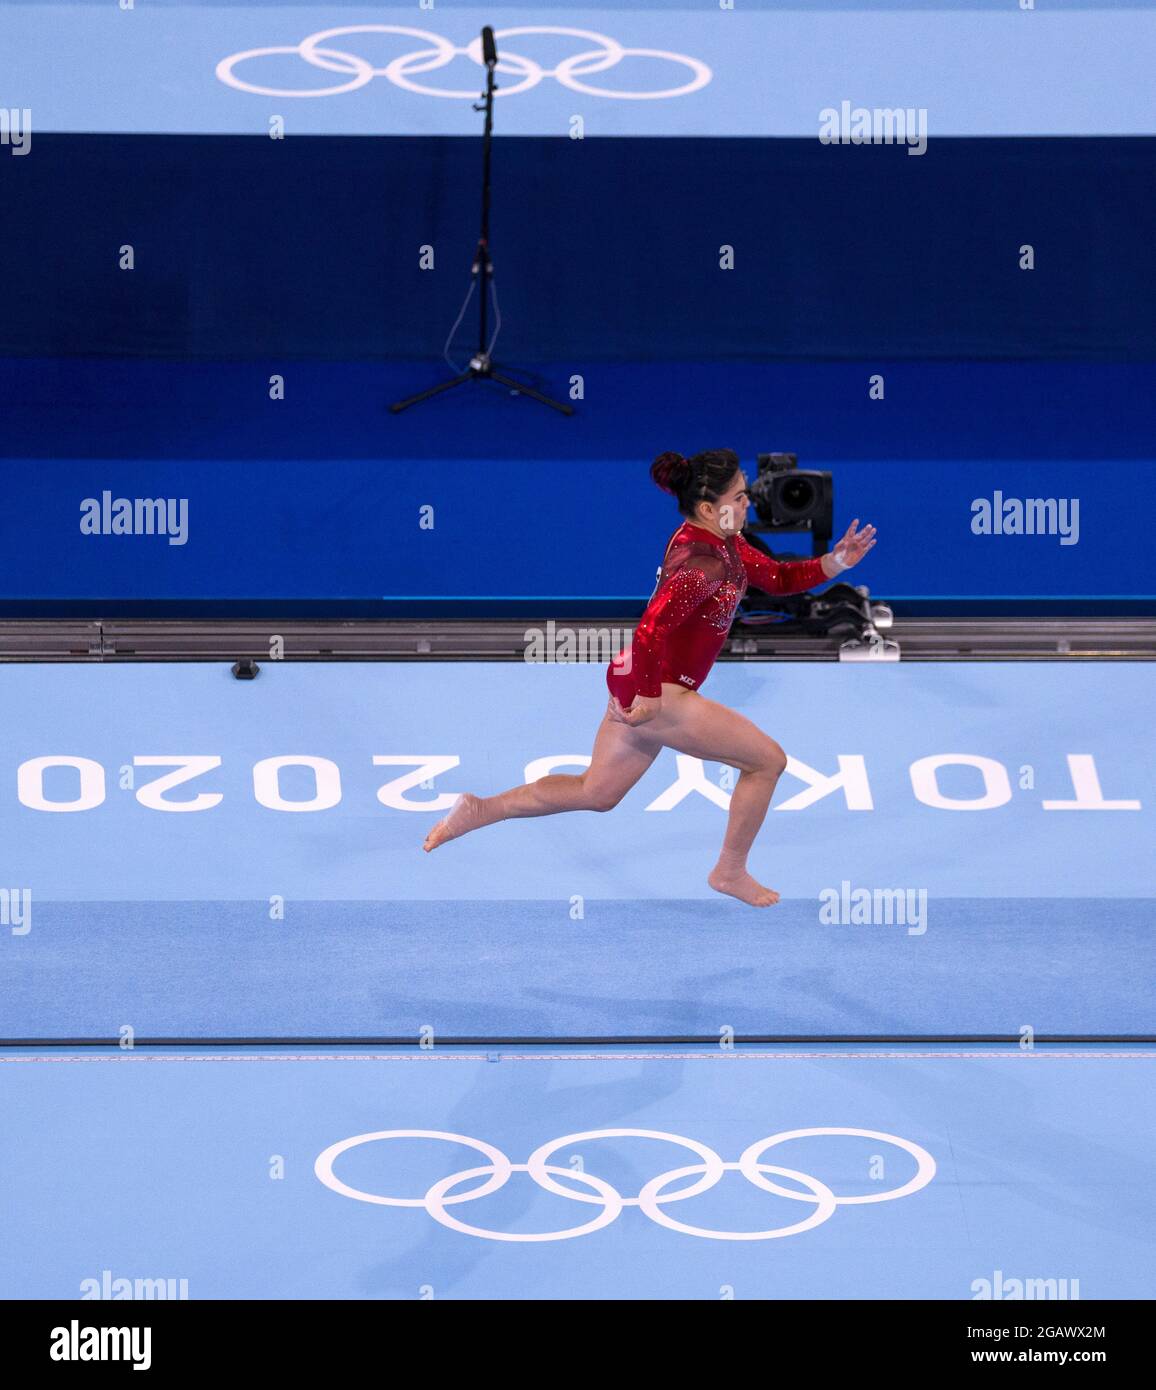 (210801) -- TOKIO, 1. August 2021 (Xinhua) -- Alexa Moreno aus Mexiko tritt am 1. August 2021 beim Frauengewölbe-Finale der Kunstturnen bei den Olympischen Spielen 2020 in Tokio, Japan, an. (Xinhua/Fei Maohua) Stockfoto